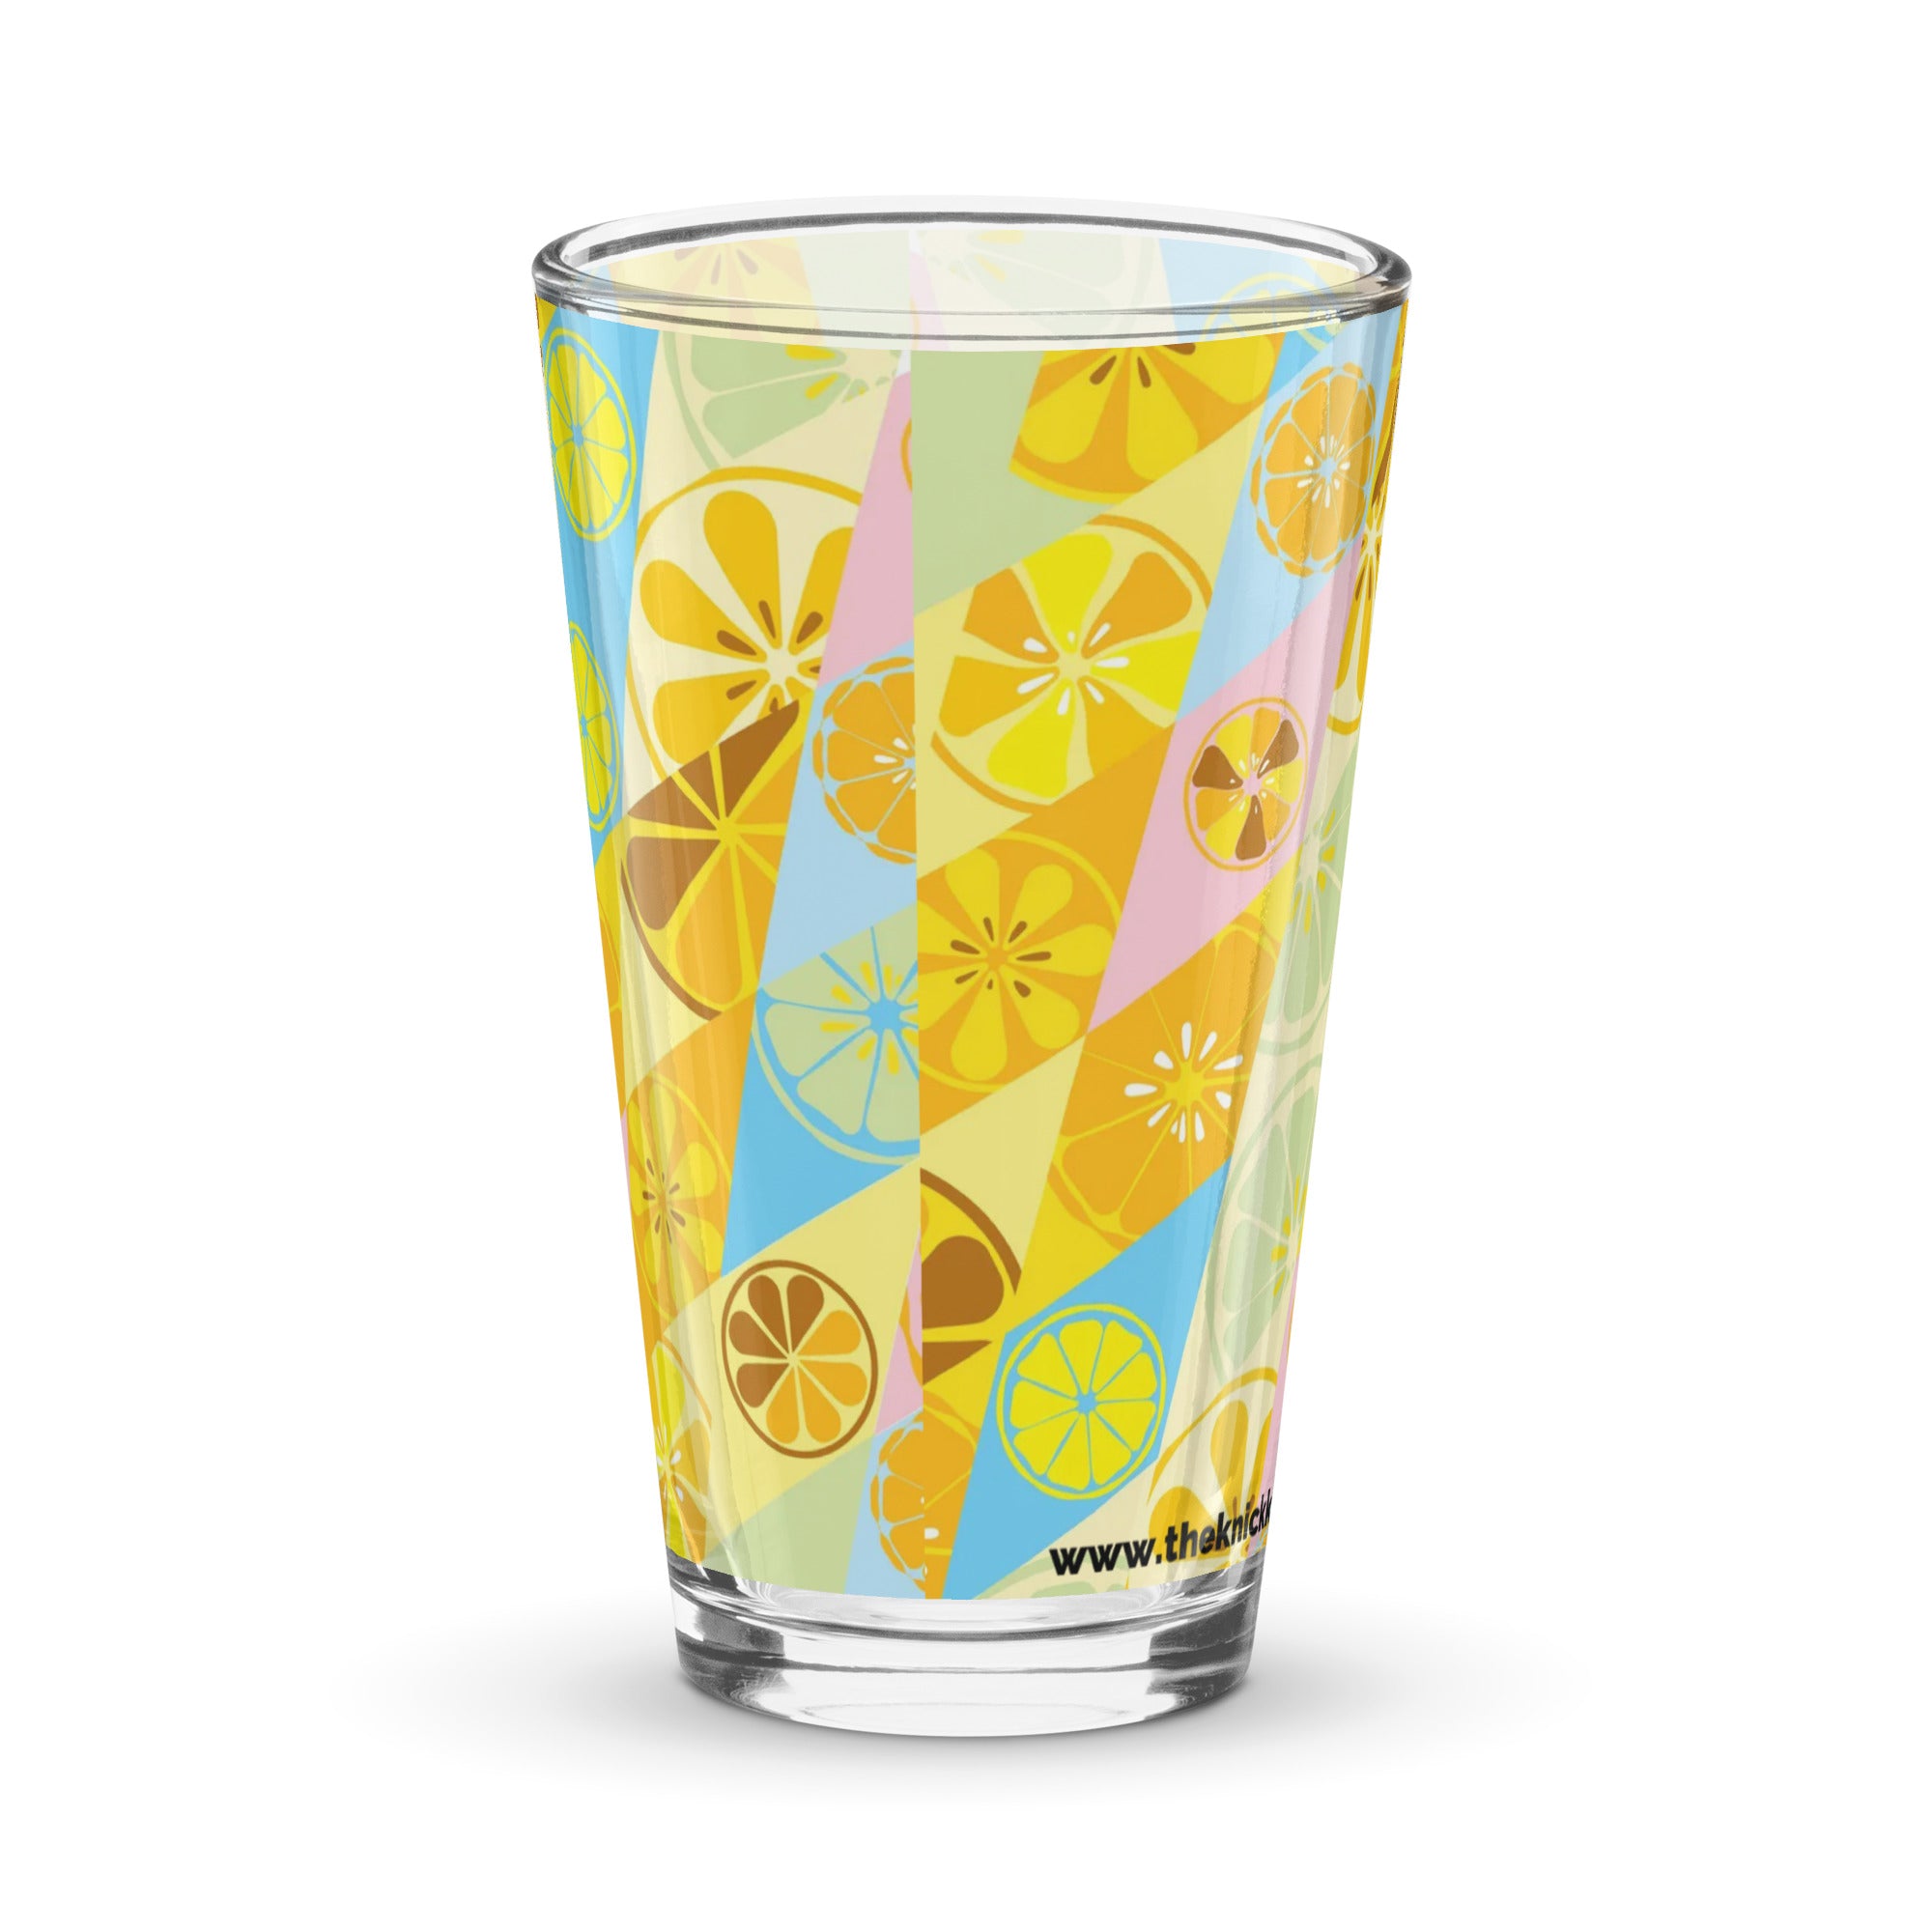 Shaker Pint Glass (16oz) - Lemonade